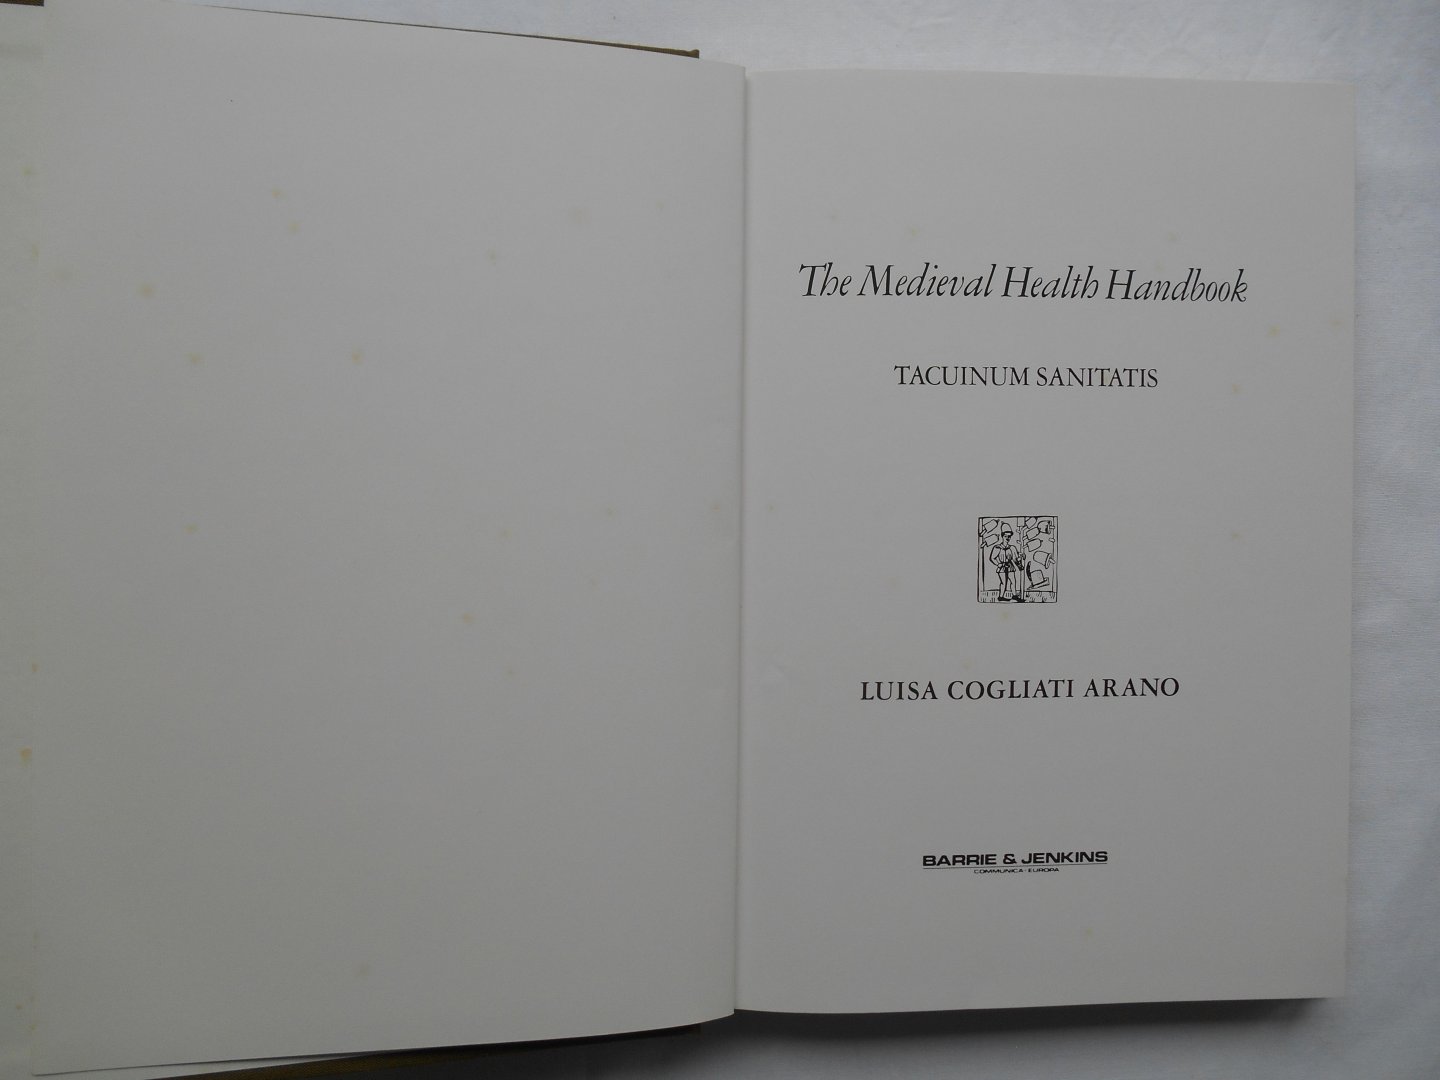 Arano, Luisa Cogliati (Hg.) - Tacuinum sanitatis, the Medieval Health Handbook